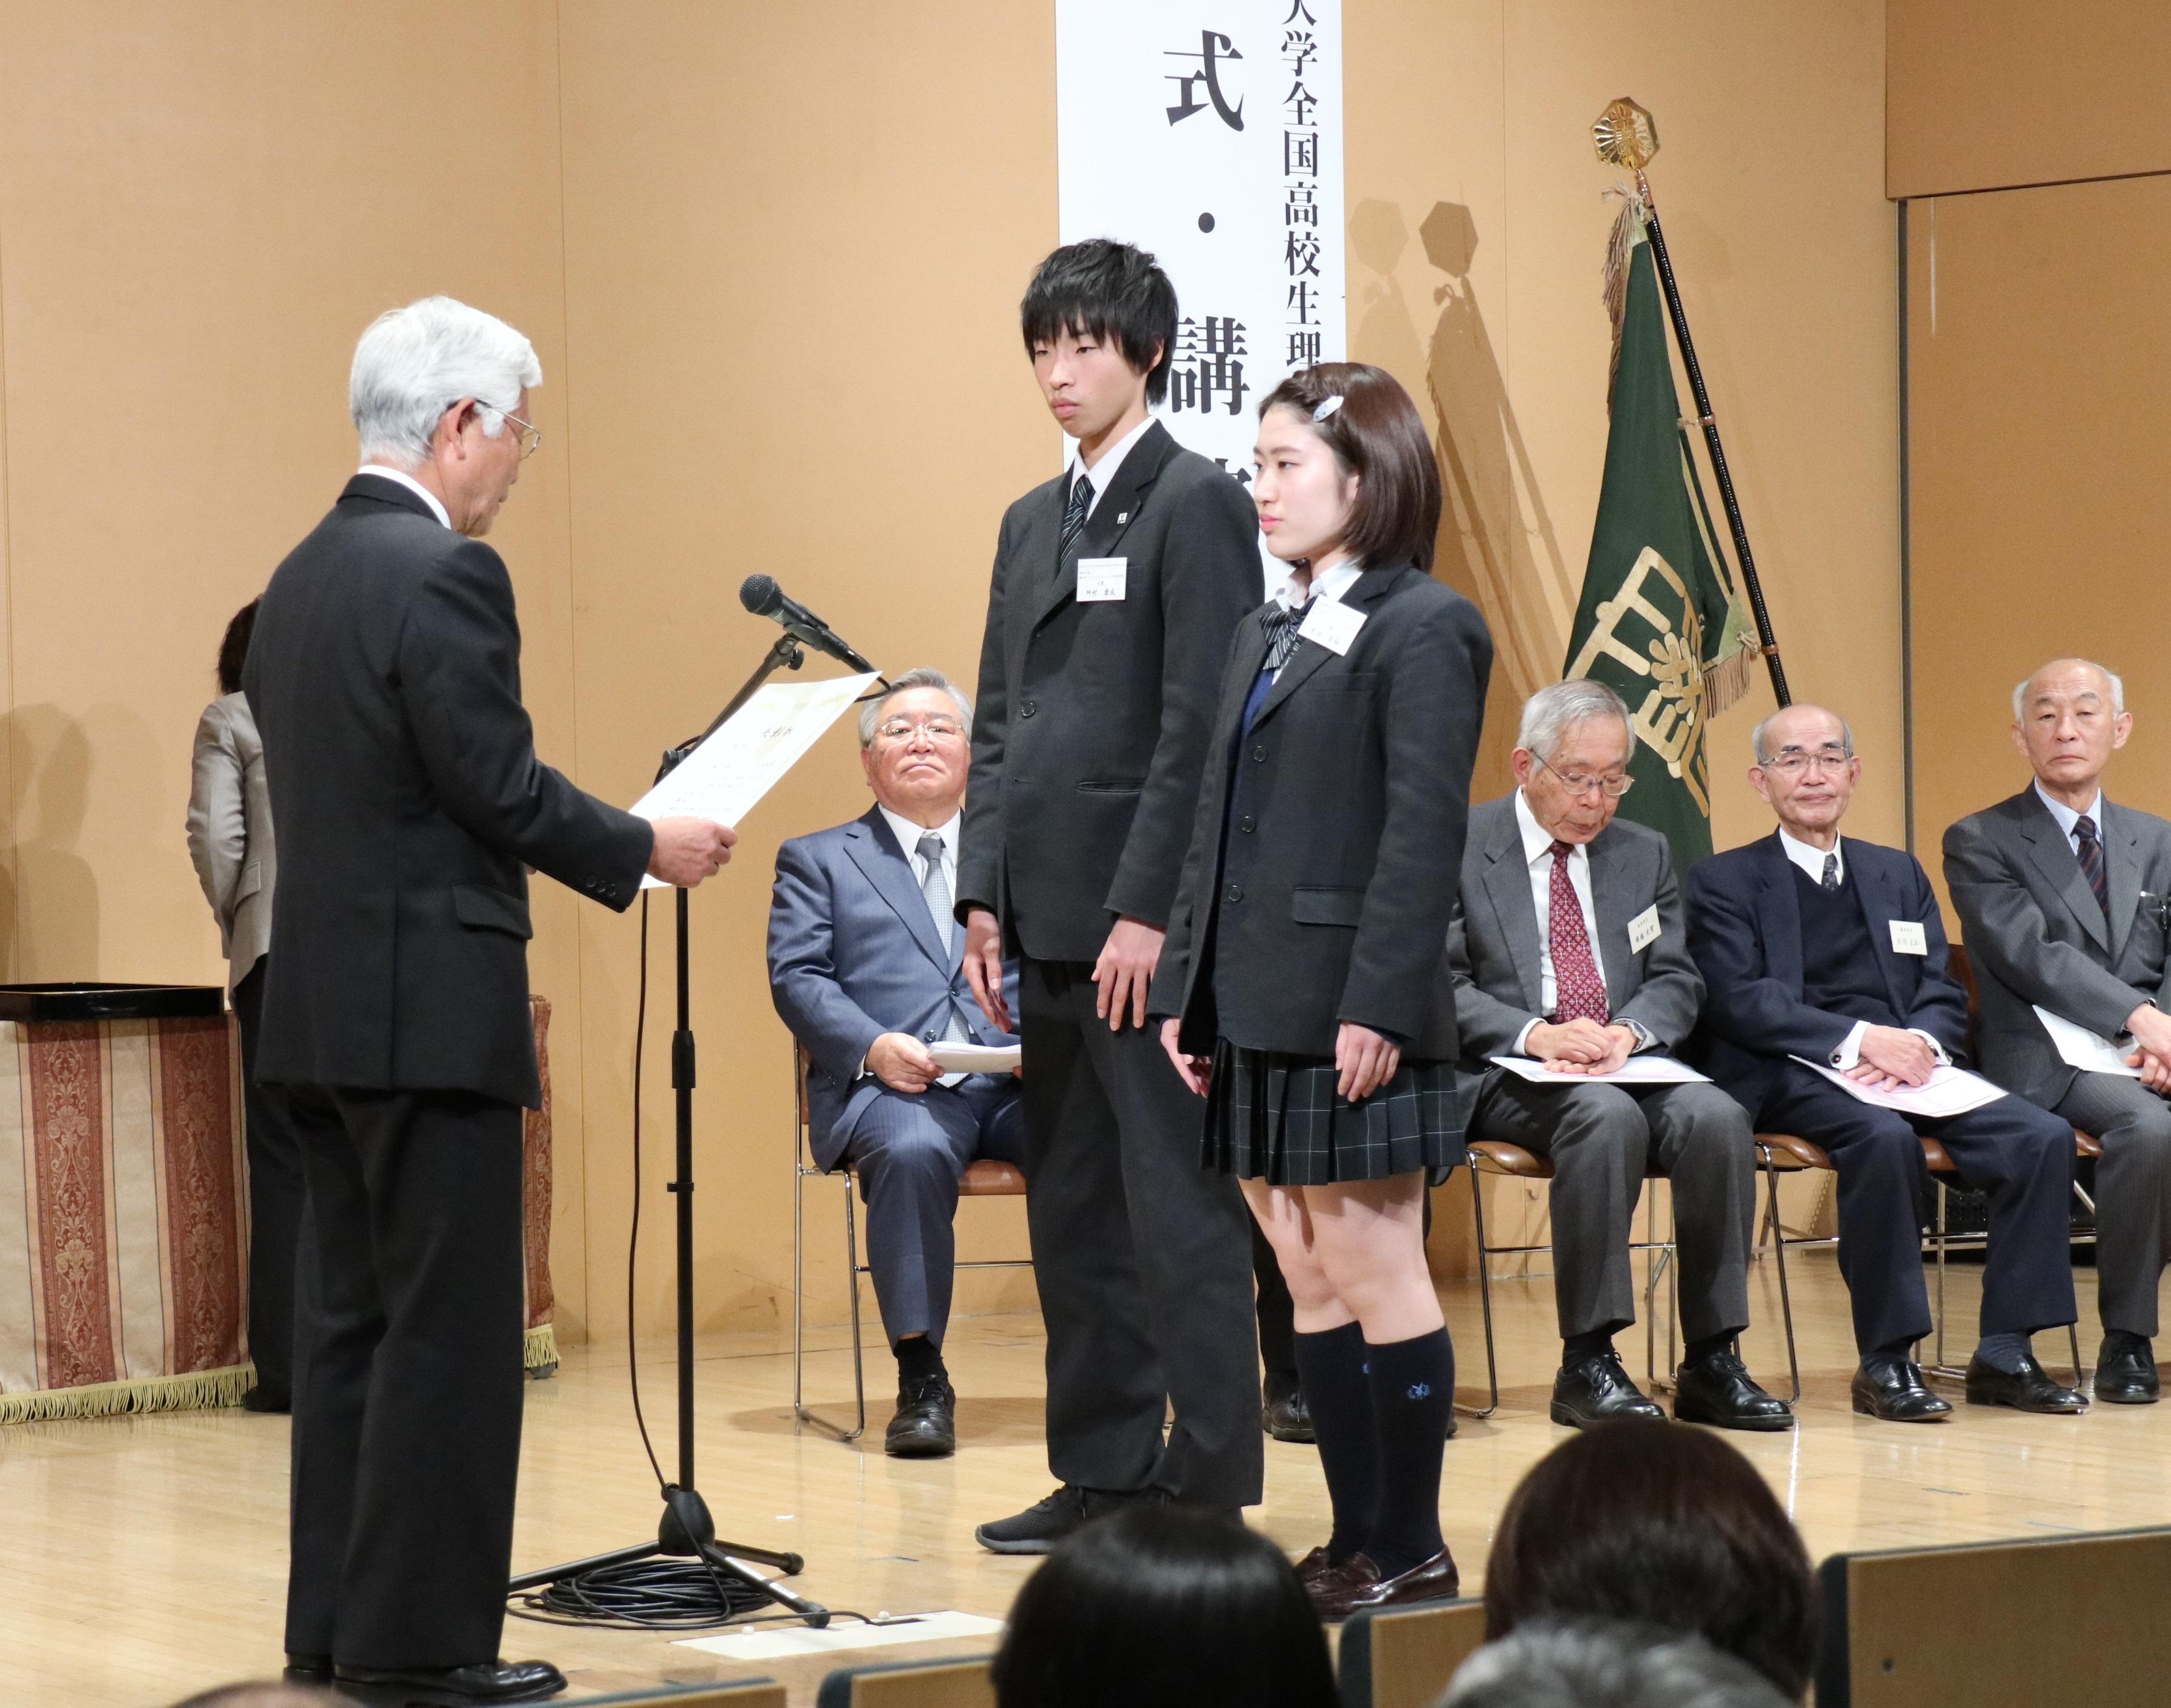 神奈川大学が、先端科学者と未来の科学者との知の交流の場である「第16回神奈川大学全国高校生理科・科学論文大賞 講演会・授賞式」を開催